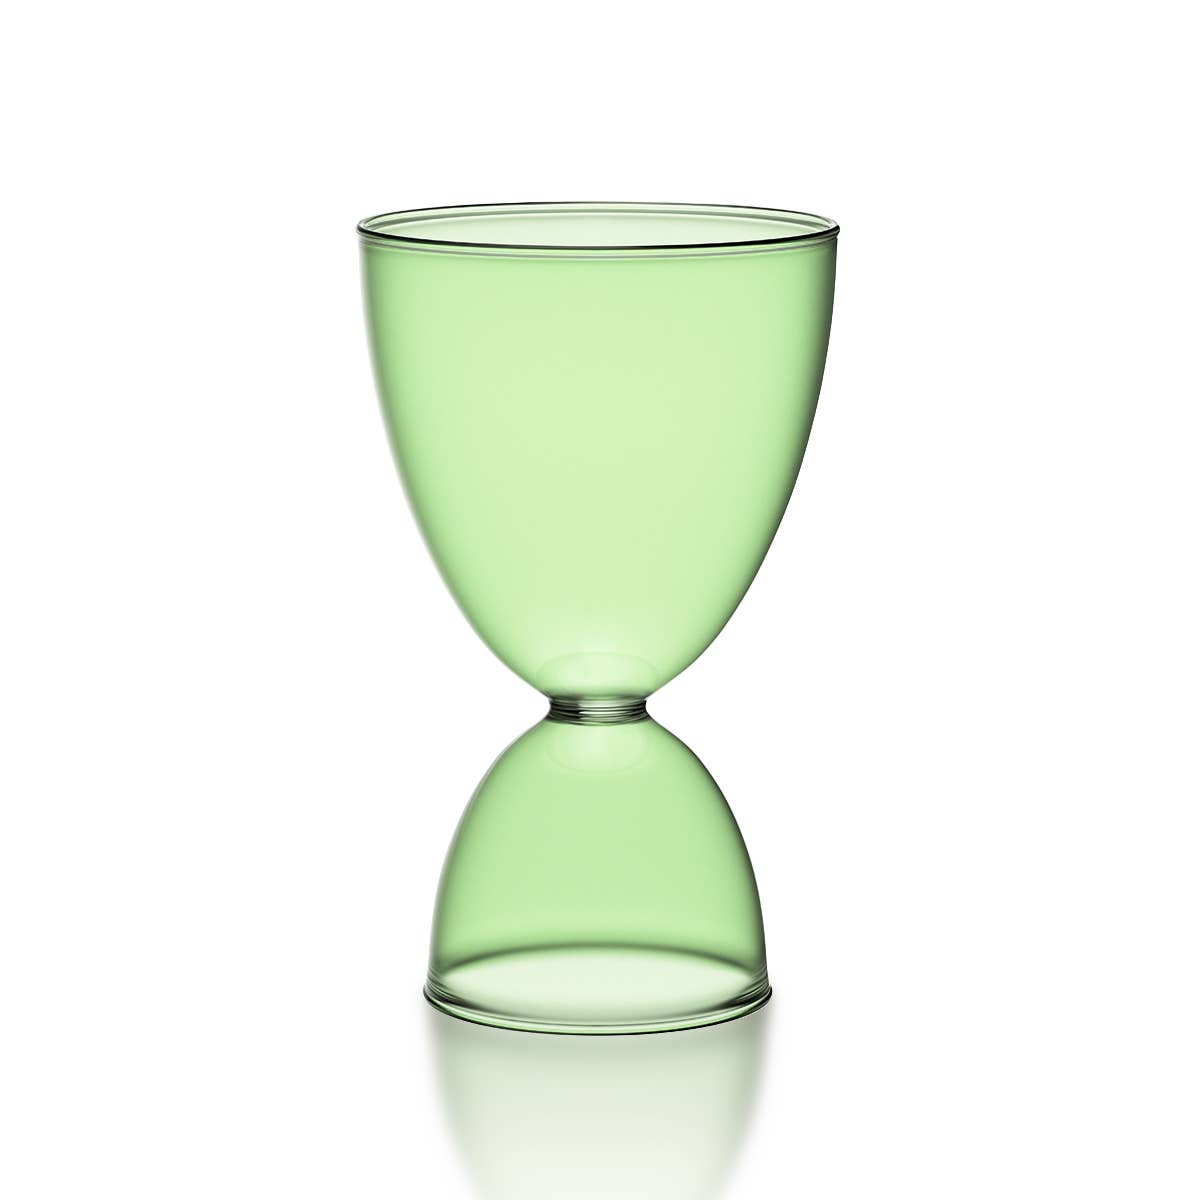 Mamo Glass - Classic green + green